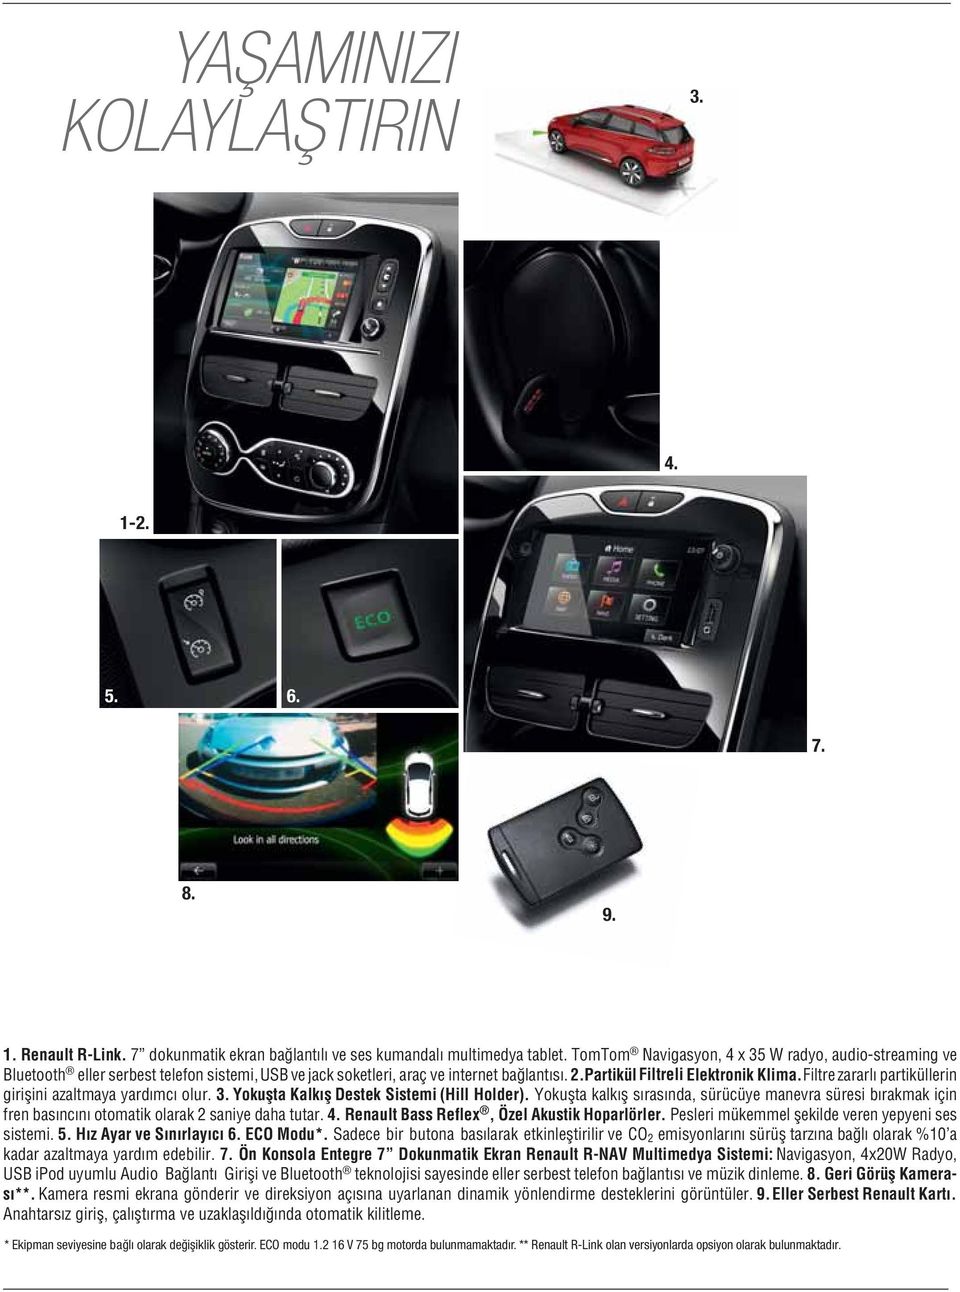 Sadece bir butona ve CO 2 %10 a kadar 7. Ön Konsola Entegre 7 Dokunmatik Ekran Renault R-NAV Multimedya Sistemi: 4x20W USB ipod Audio ve serbest ve müzik 8.